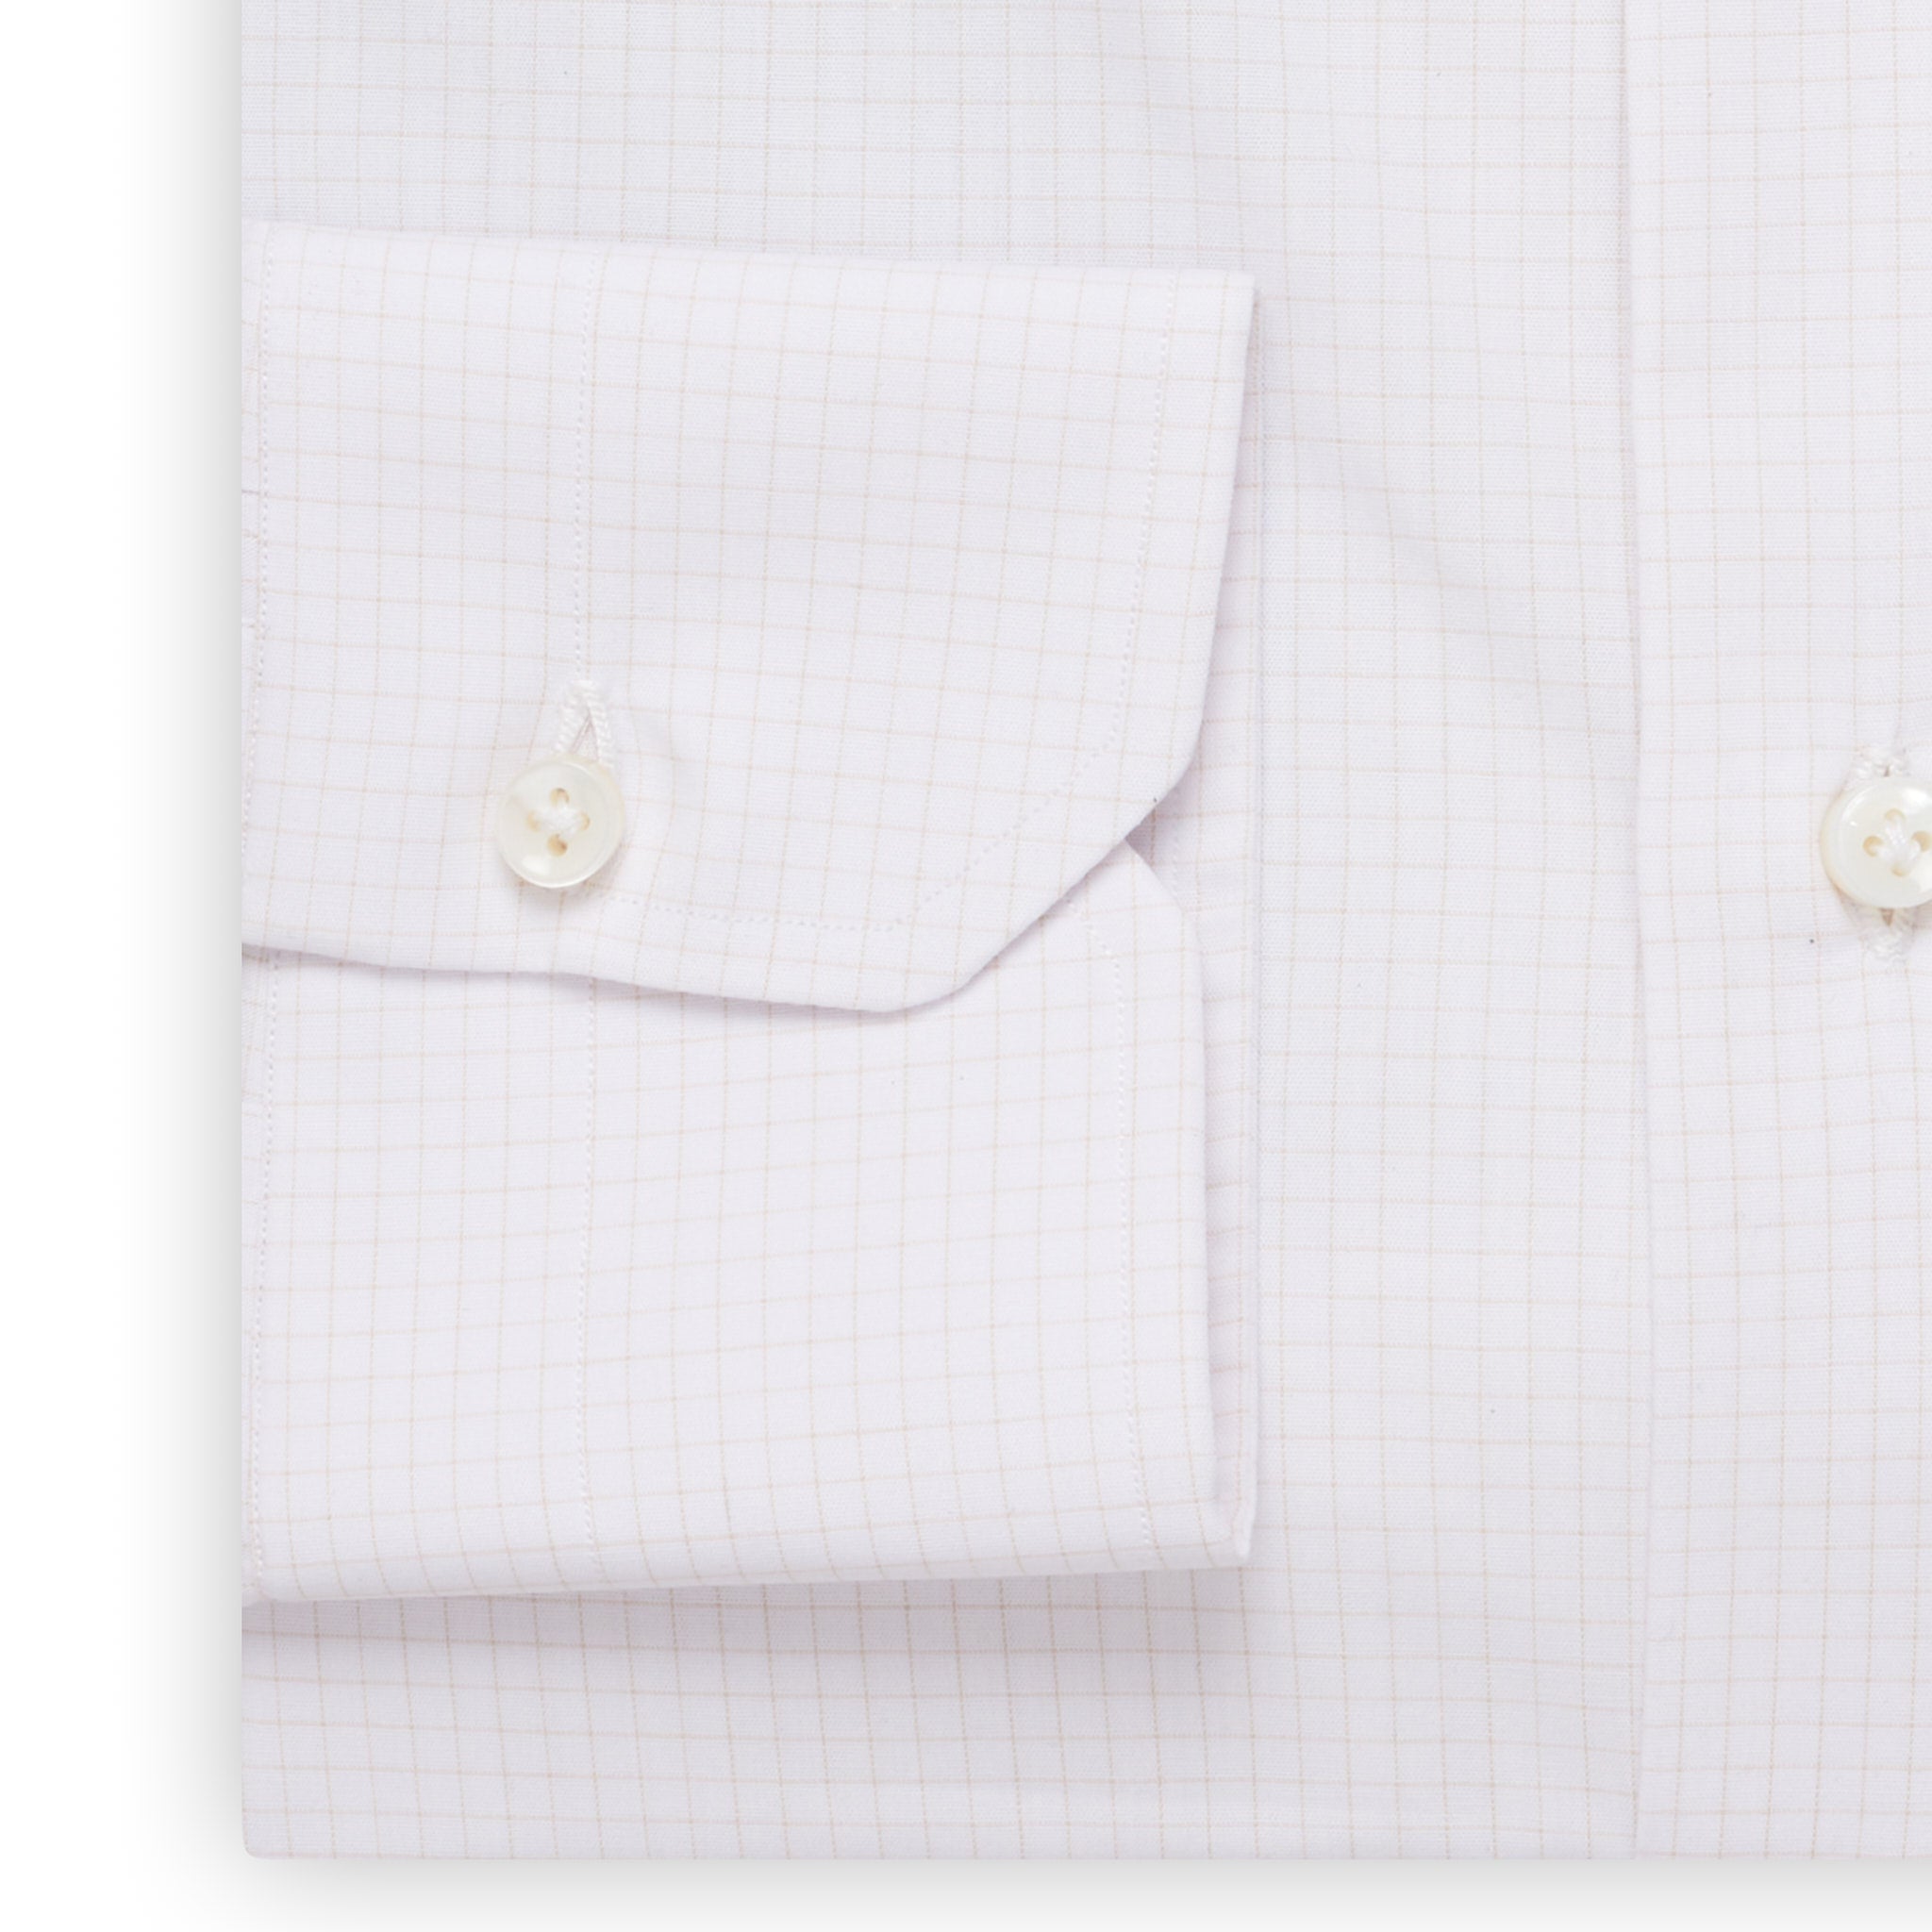 MATTABISCH by Kiton Handmade White Beige Checkered Dress Shirt NEW